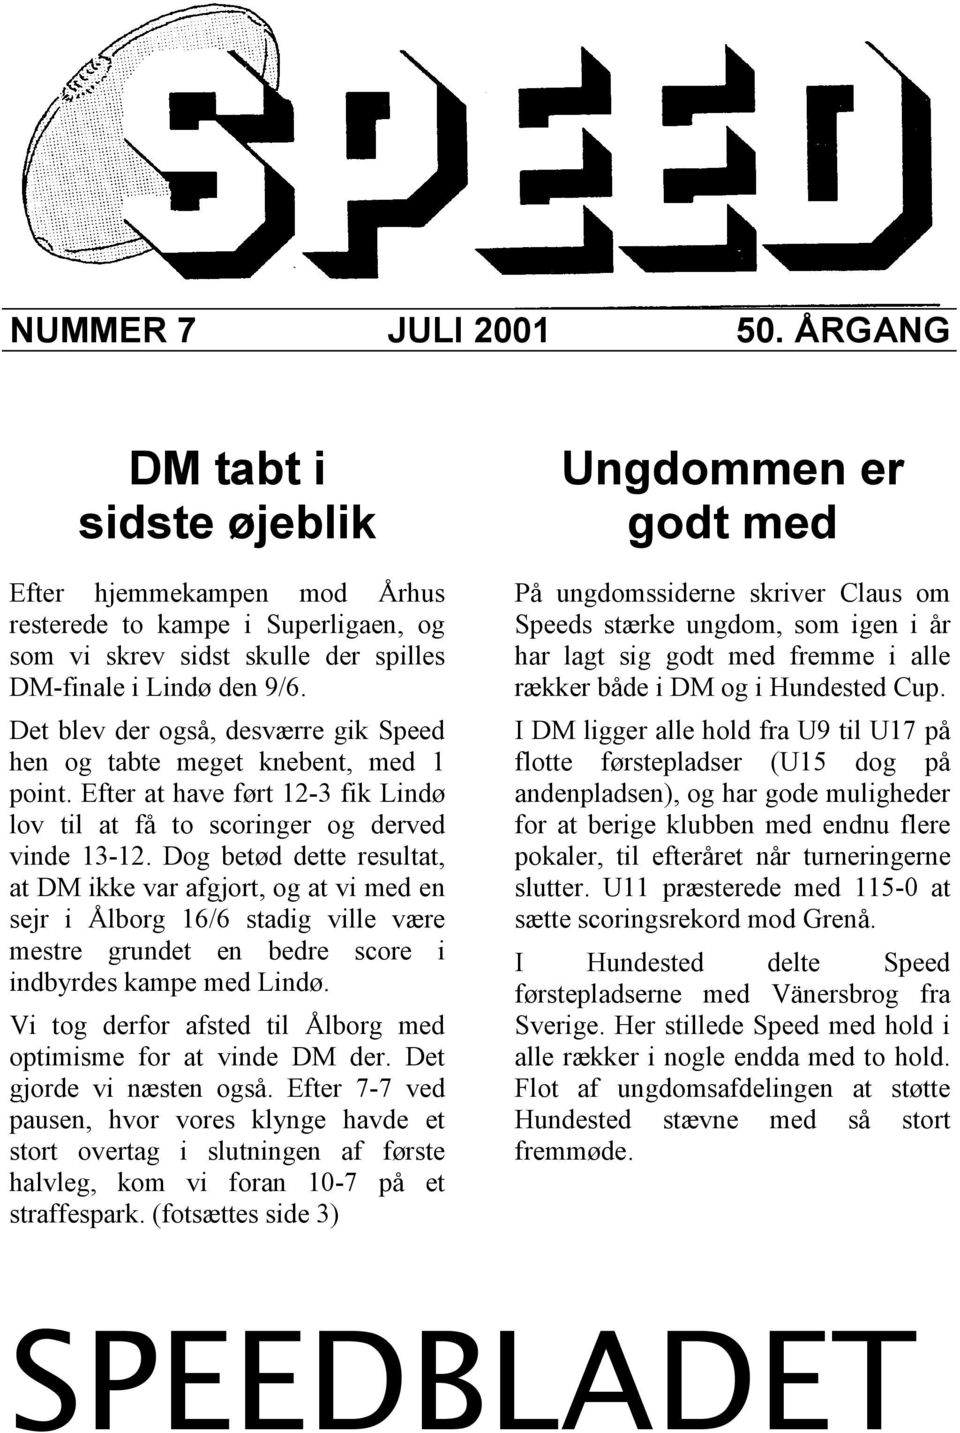 Dog betød dette resultat, at DM ikke var afgjort, og at vi med en sejr i Ålborg 16/6 stadig ville være mestre grundet en bedre score i indbyrdes kampe med Lindø.